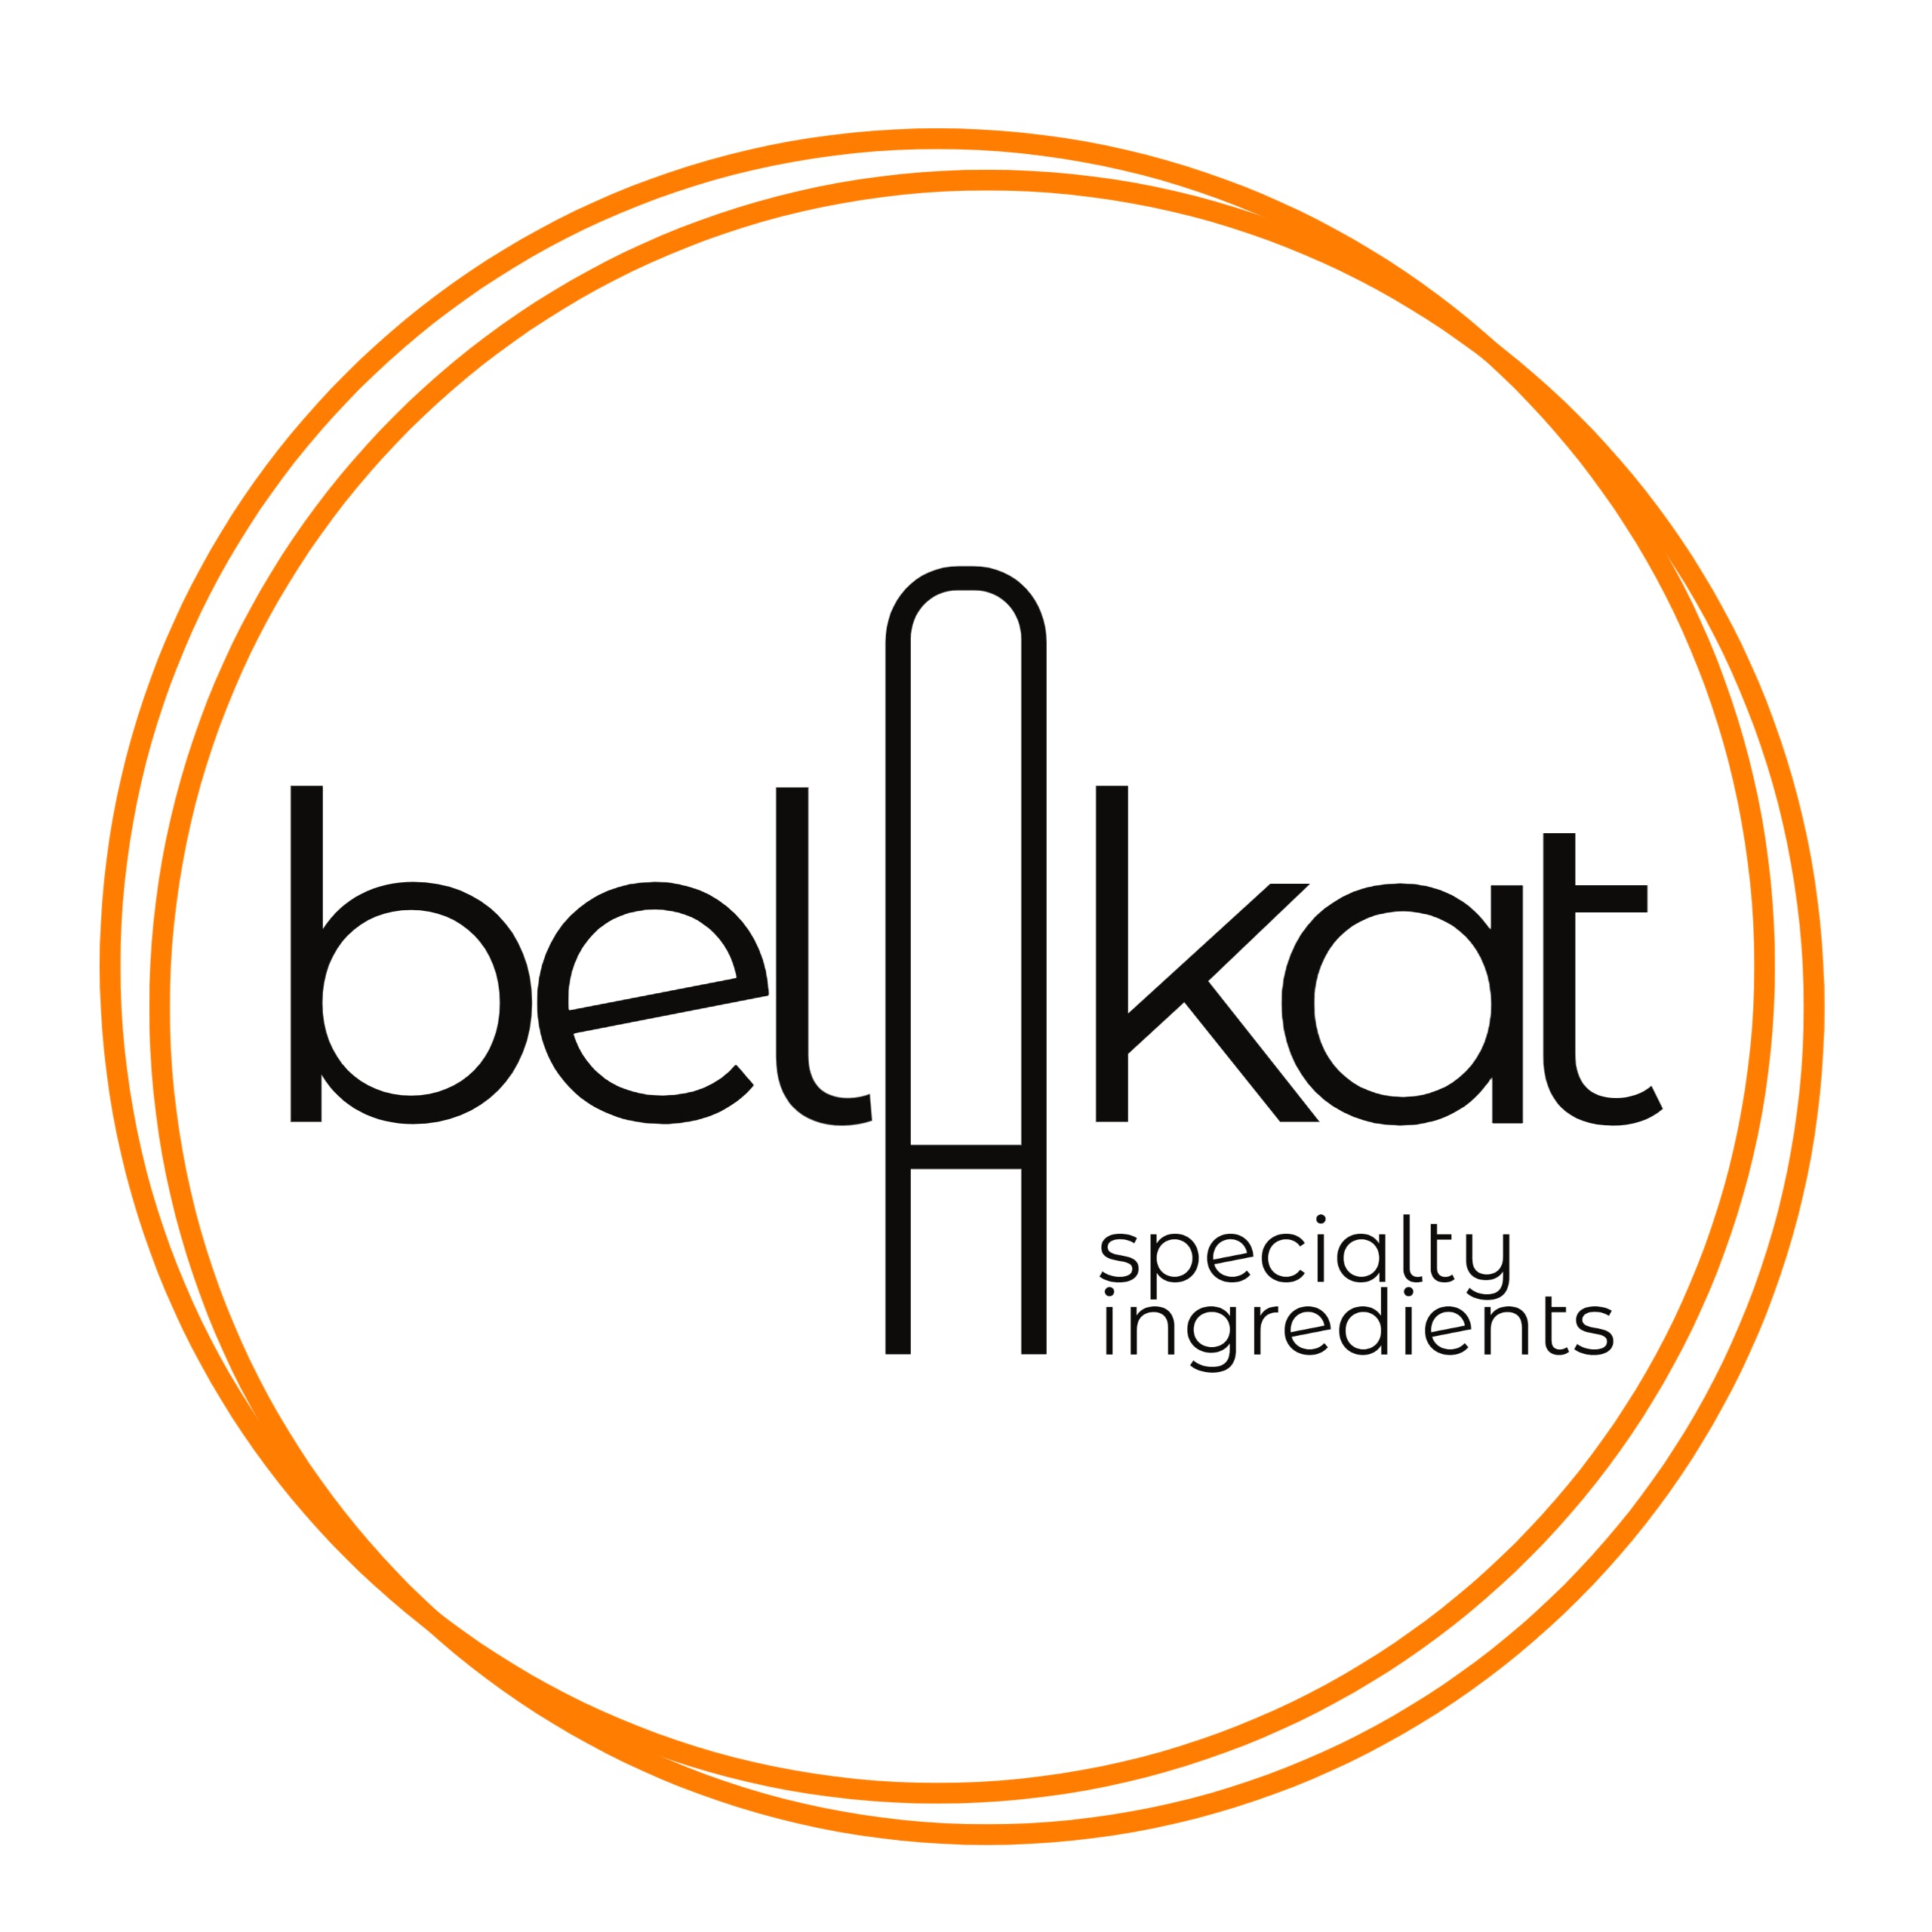 belakat specialty ingredients